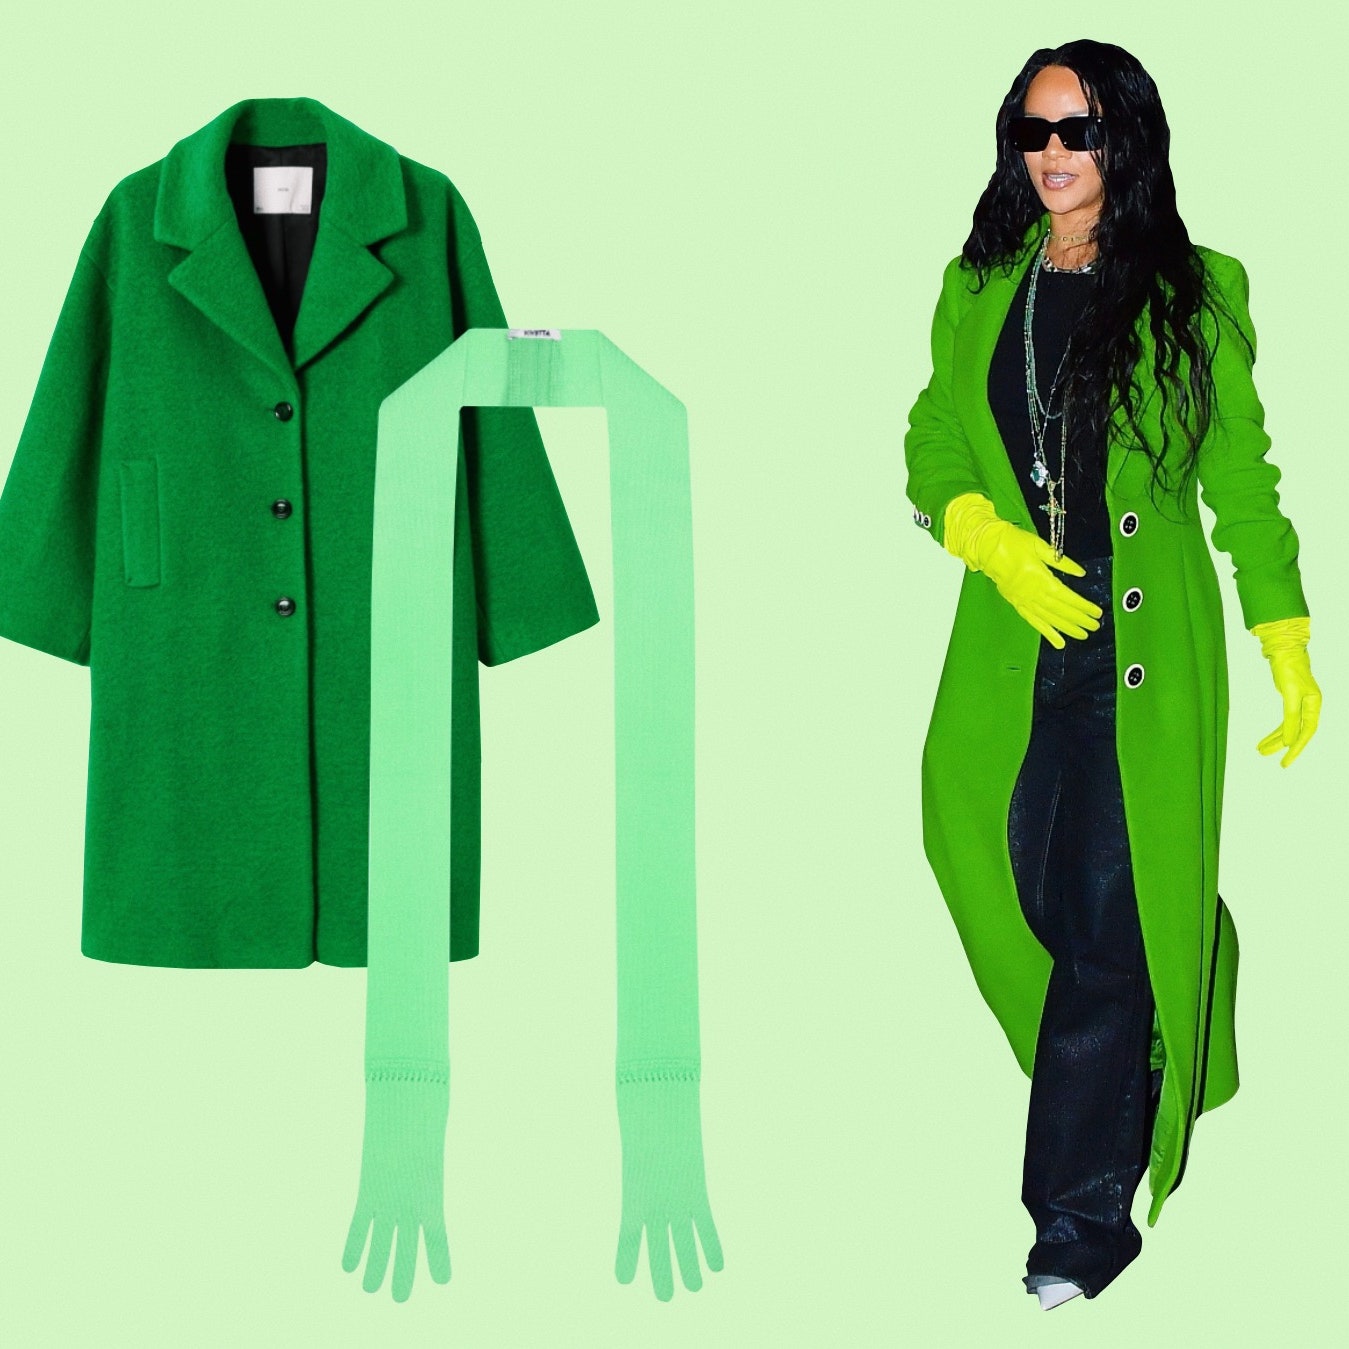 Повторяйте за Рианной &- носите зеленое пальто с зелеными аксессуарами